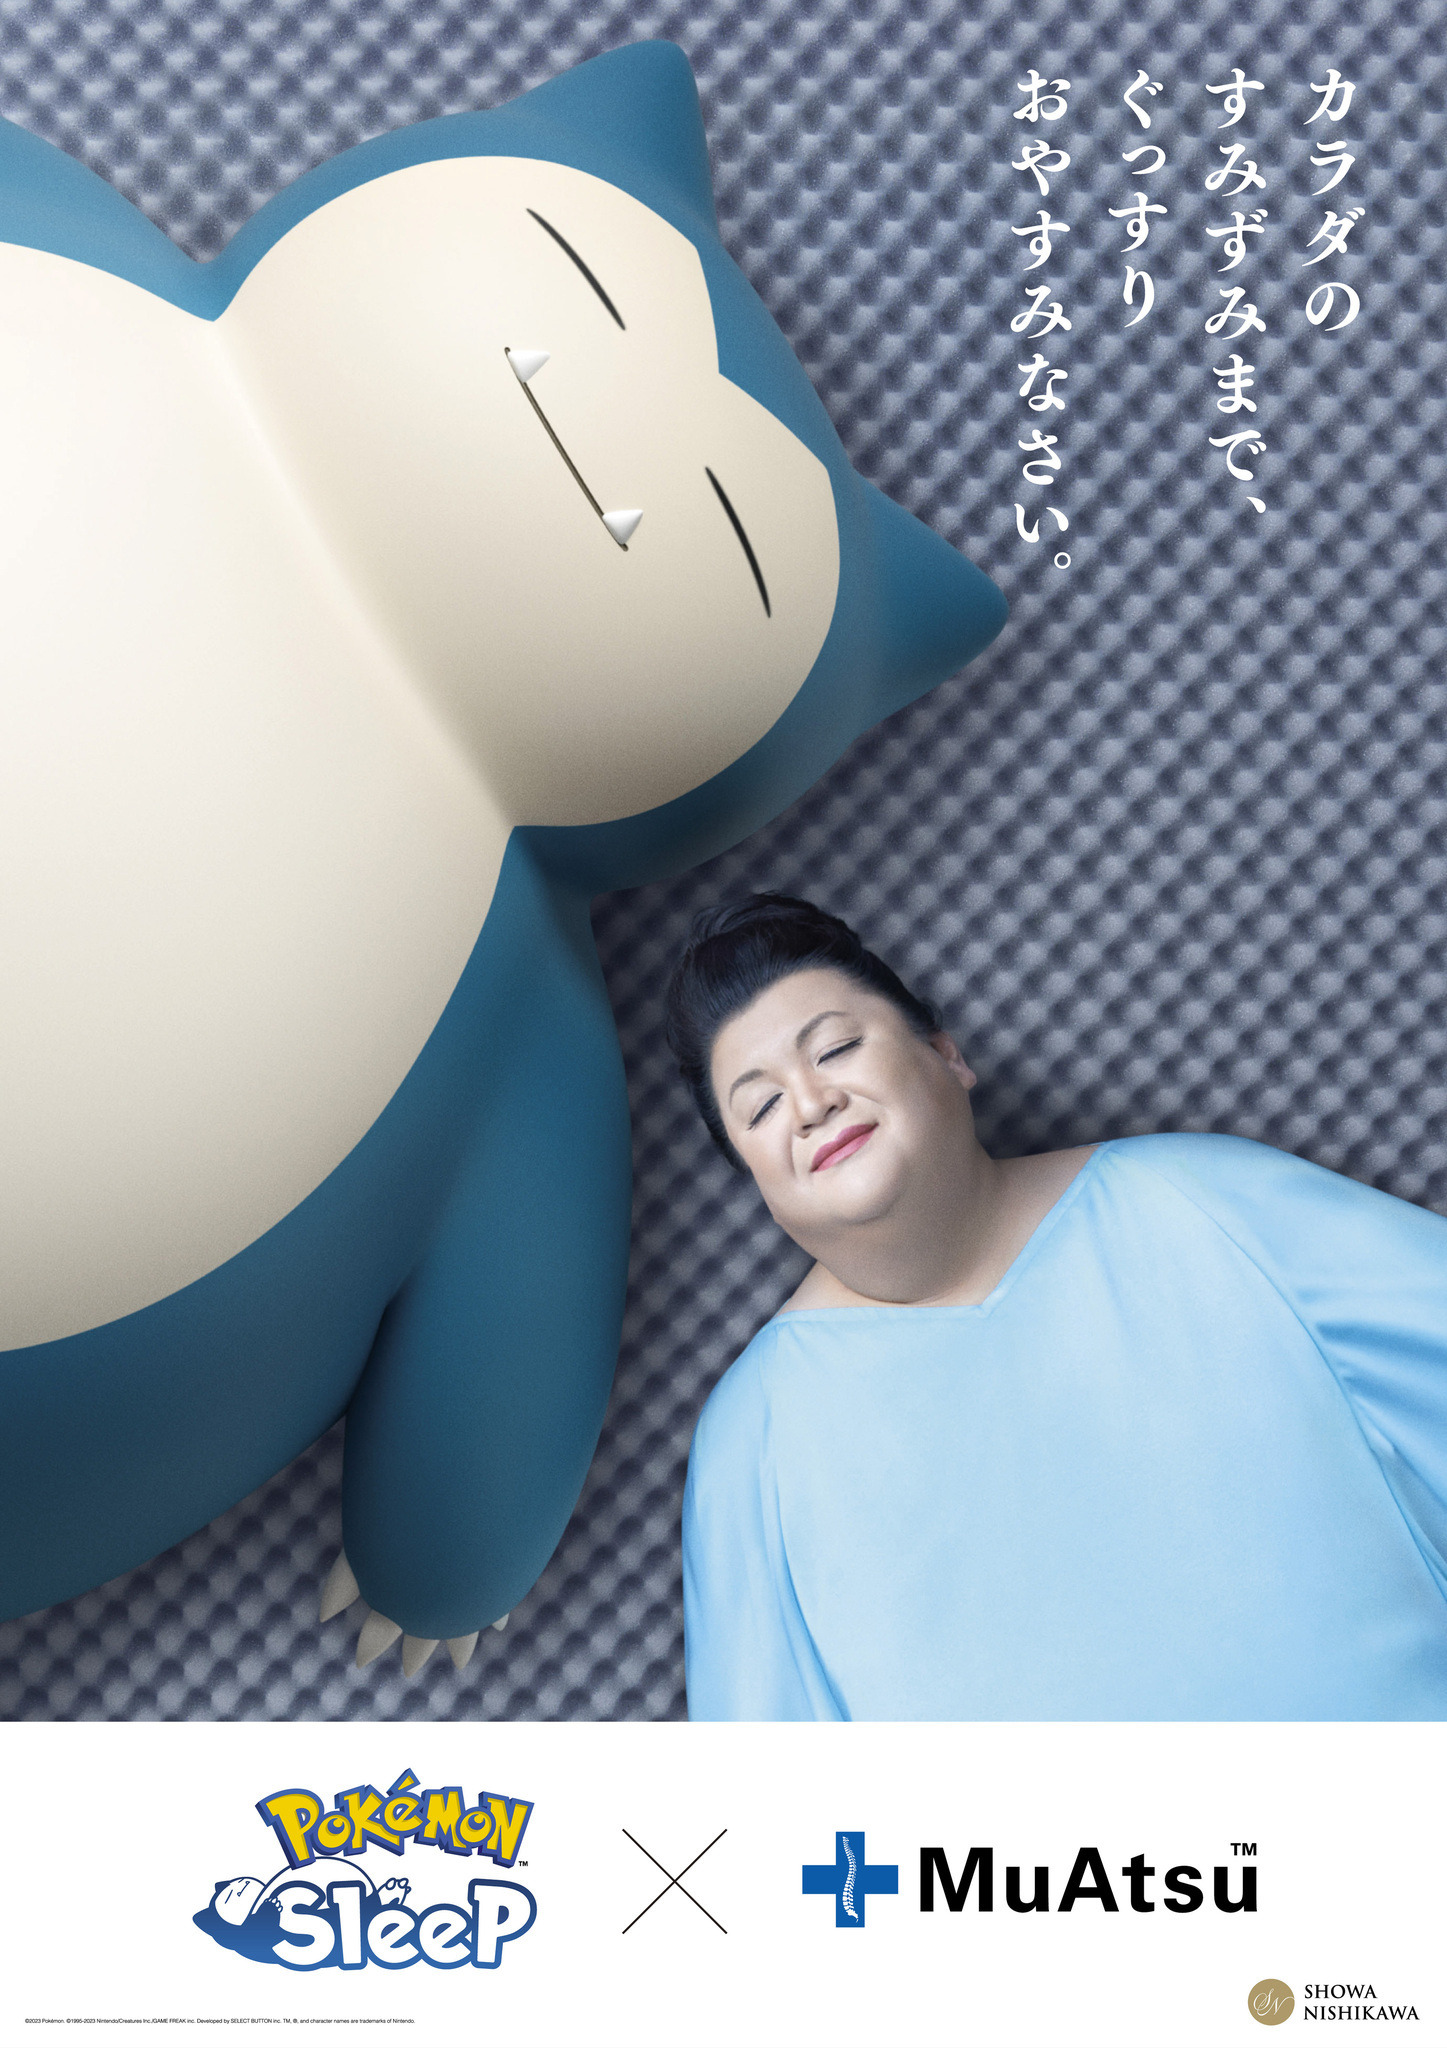 ポケモン」カビゴンとマツコが夢の共演!? 睡眠ゲームアプリ「Pokémon